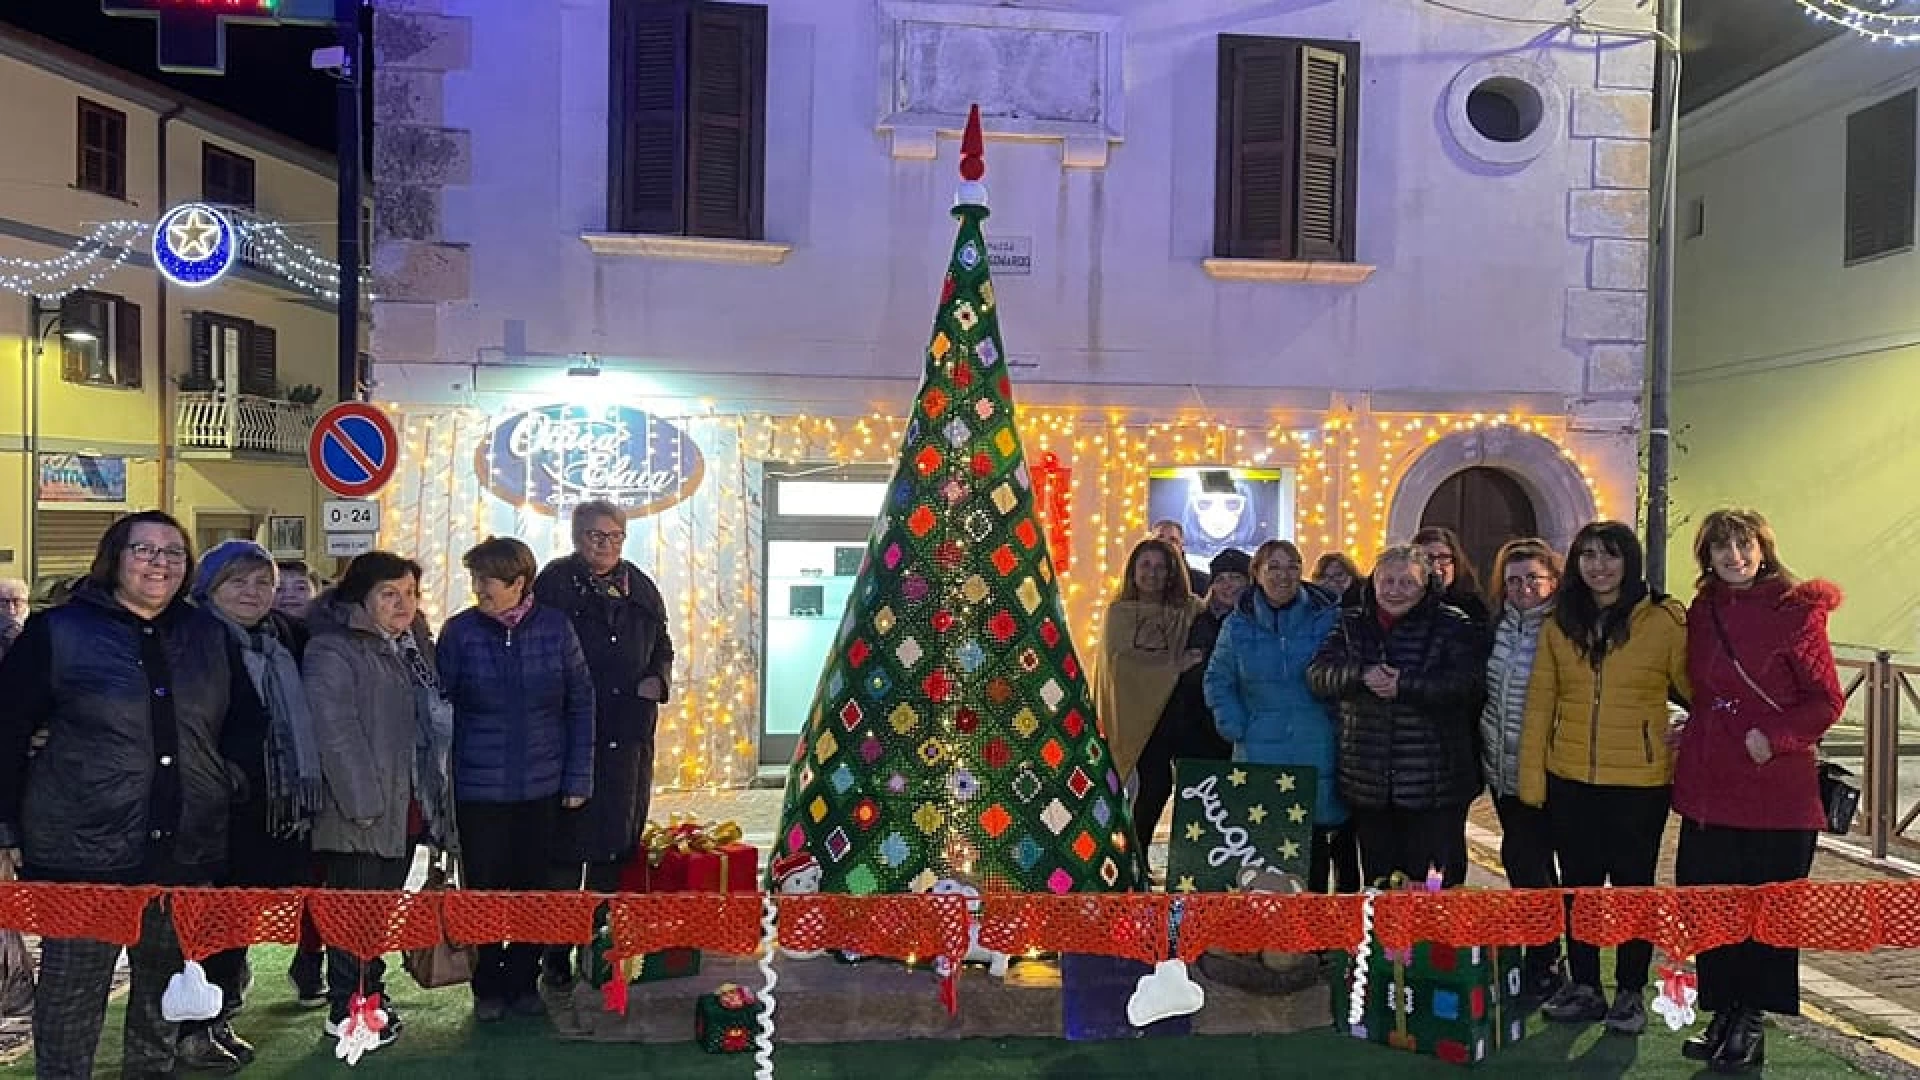 Colli a Volturno: l’albero realizzato a mano dalle “uncinettine”. Una bella attrazione natalizia per turisti e passanti.